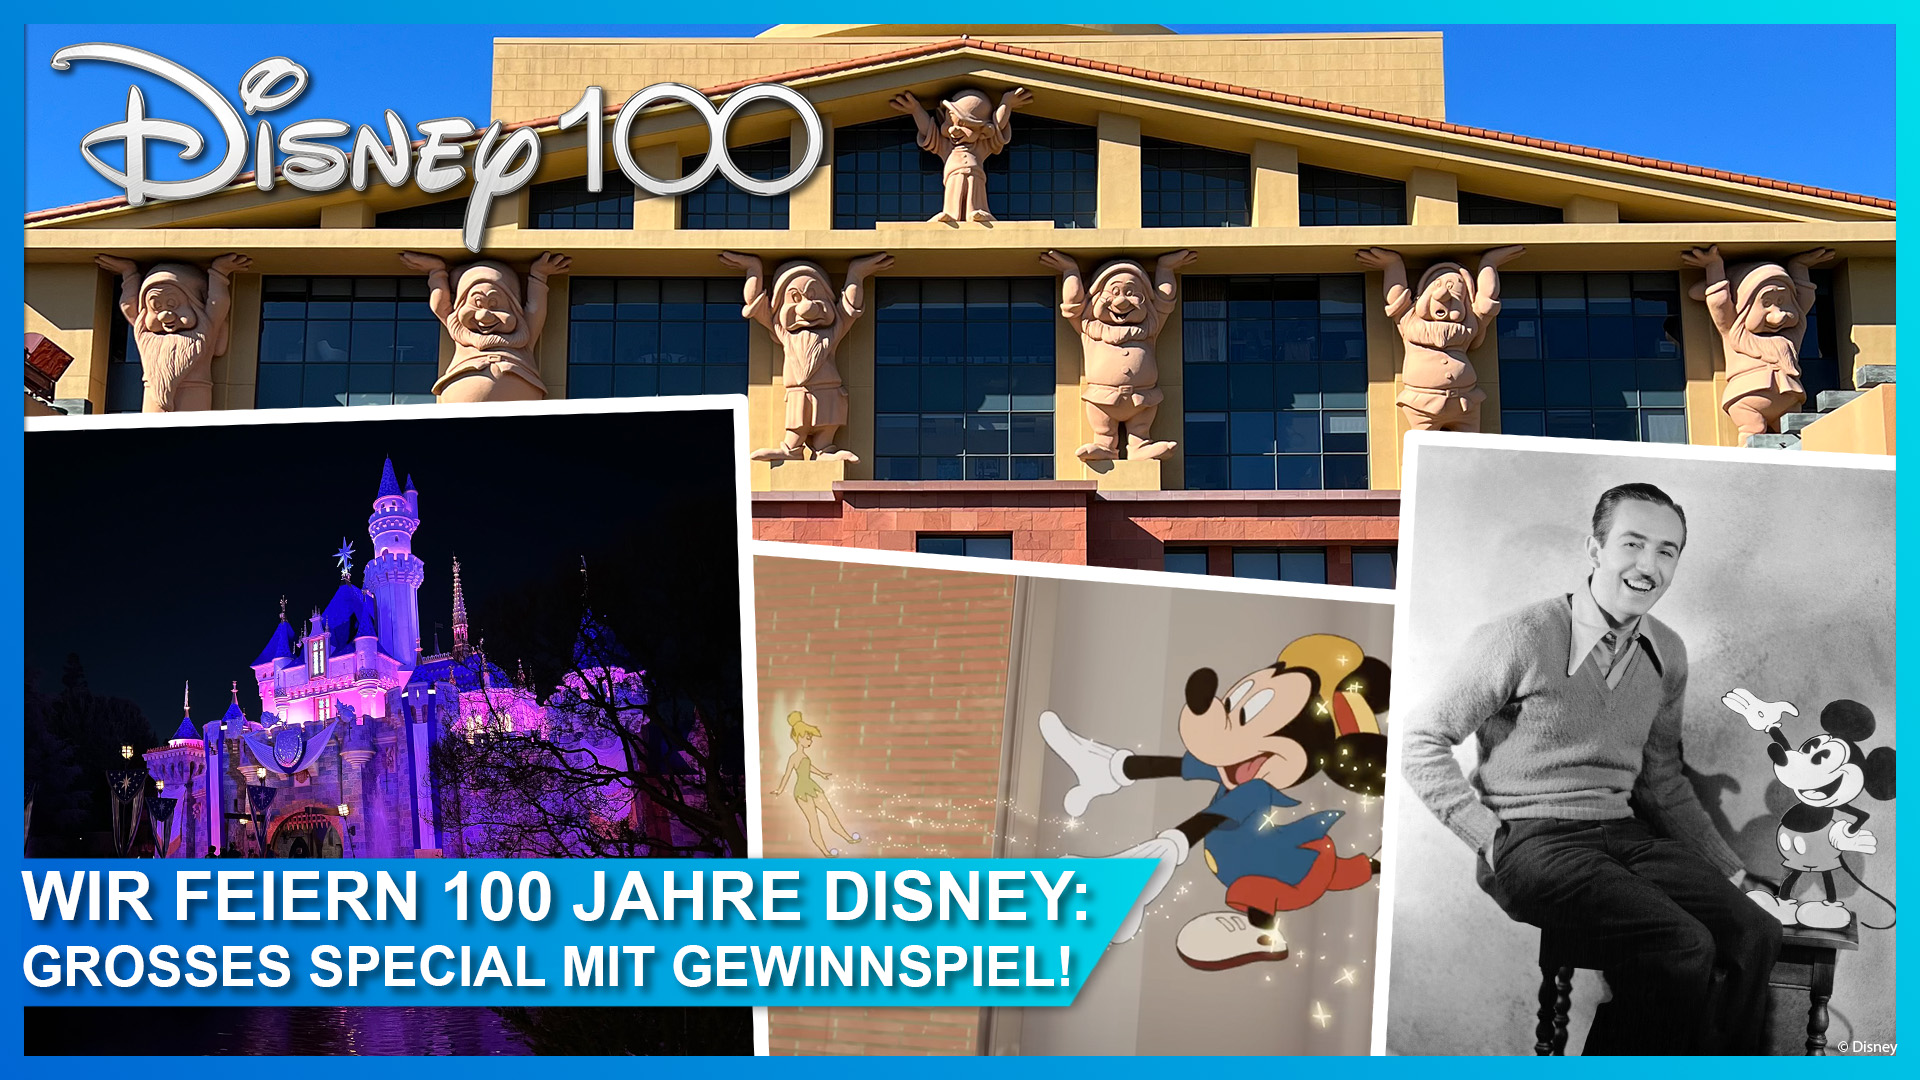 Wir feiern 100 Jahre Disney: Großes Disney100 Special mit Gewinnspiel